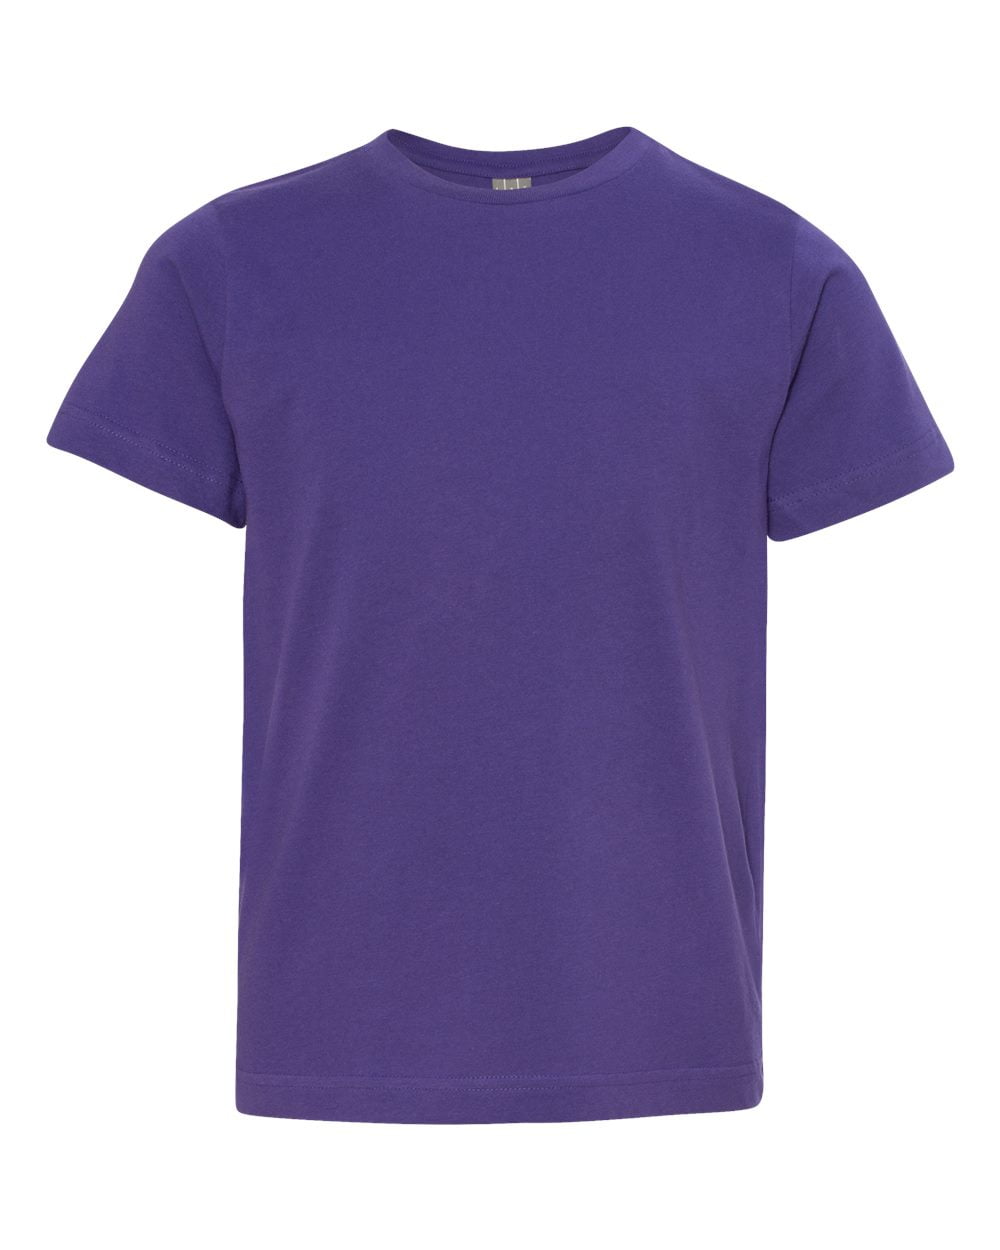 LAT Apparel - LAT Fine Jersey T-Shirt (6101) Purple, M - Walmart.com ...